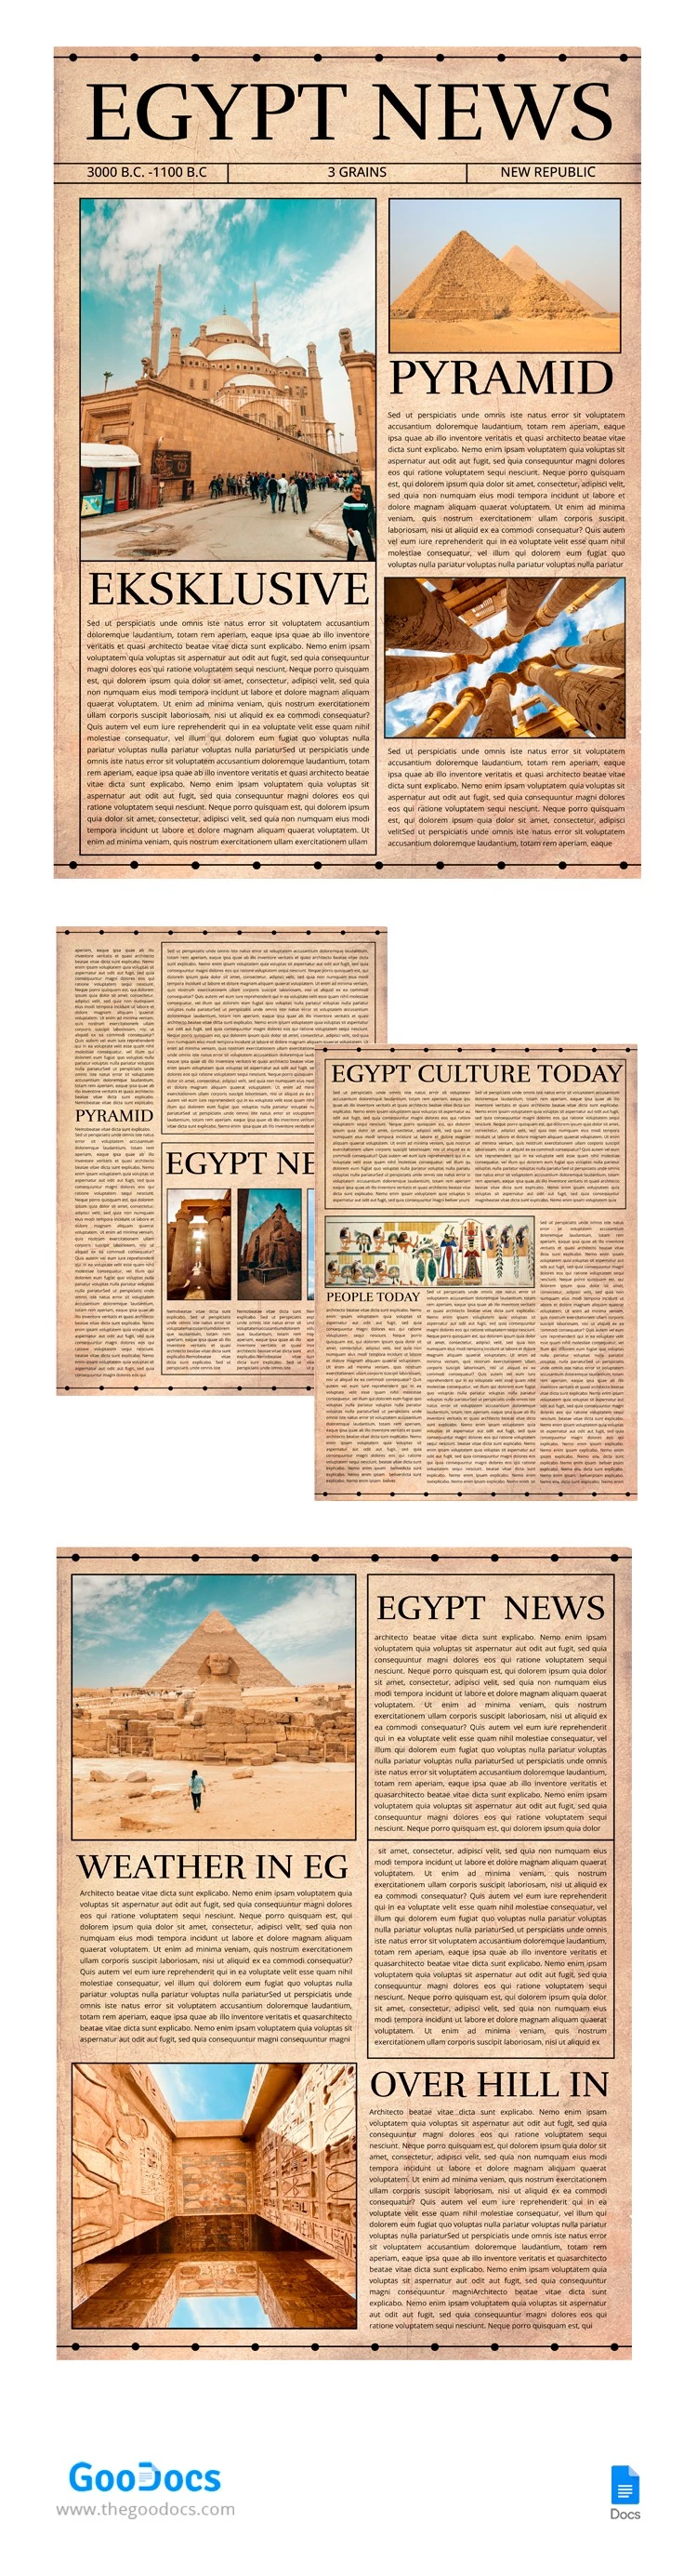 Giornale egiziano - free Google Docs Template - 10065740